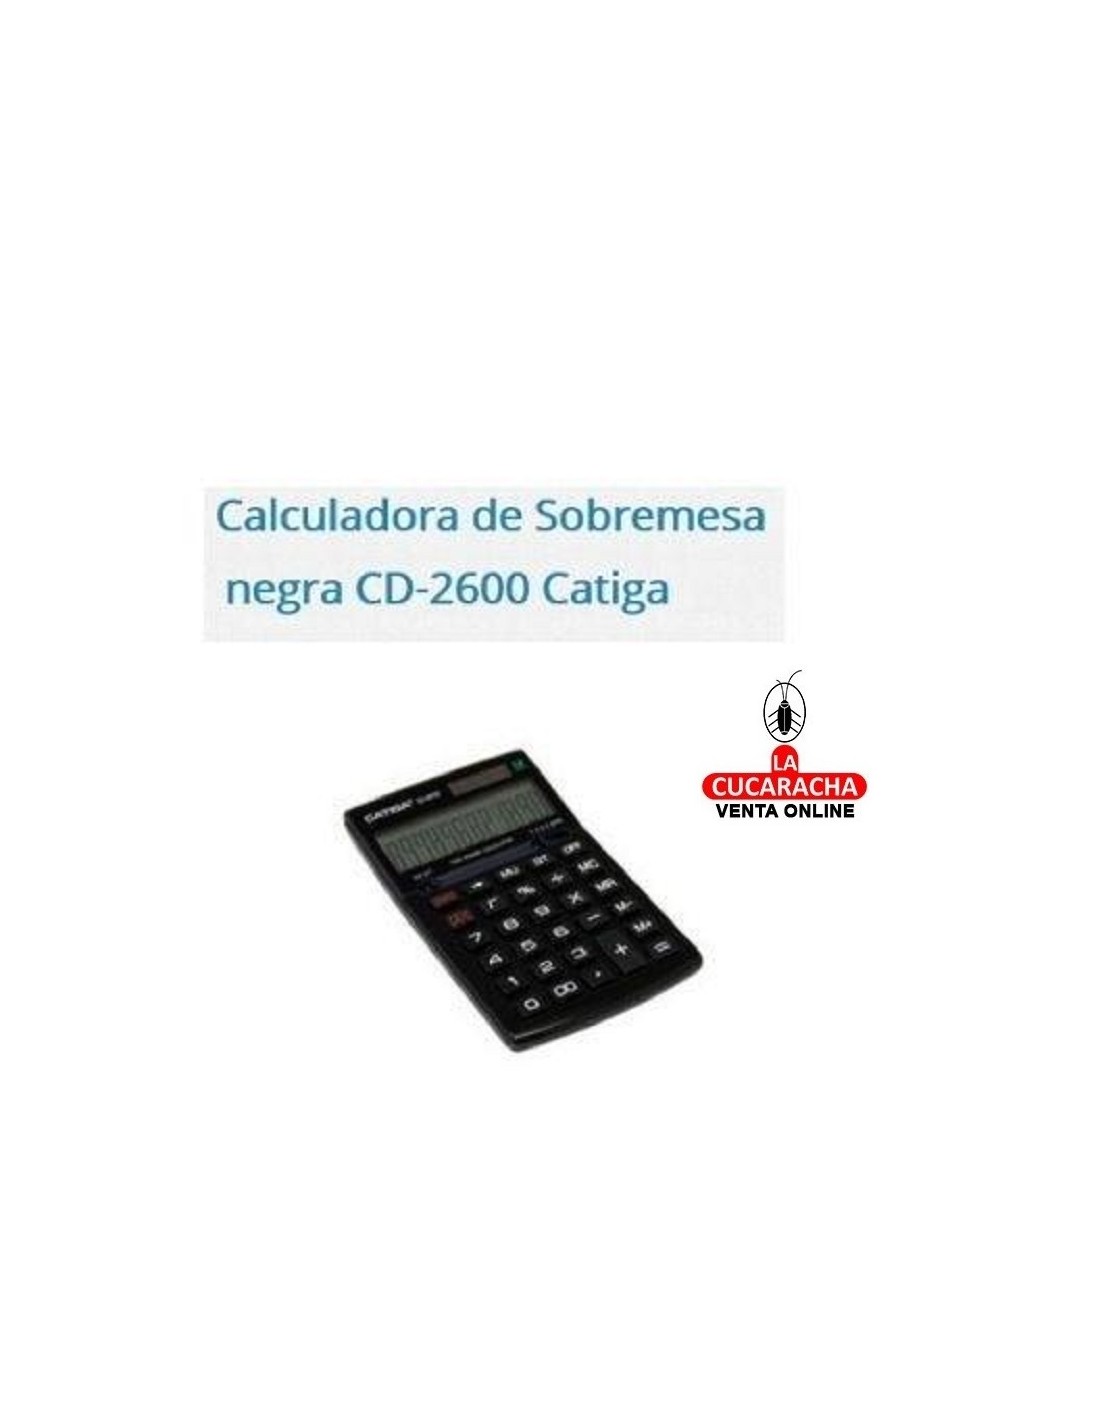 Susceptibles a Melodramático sagrado comprar catiga-calculadora-catiga-cd2600-12dig-negra on line